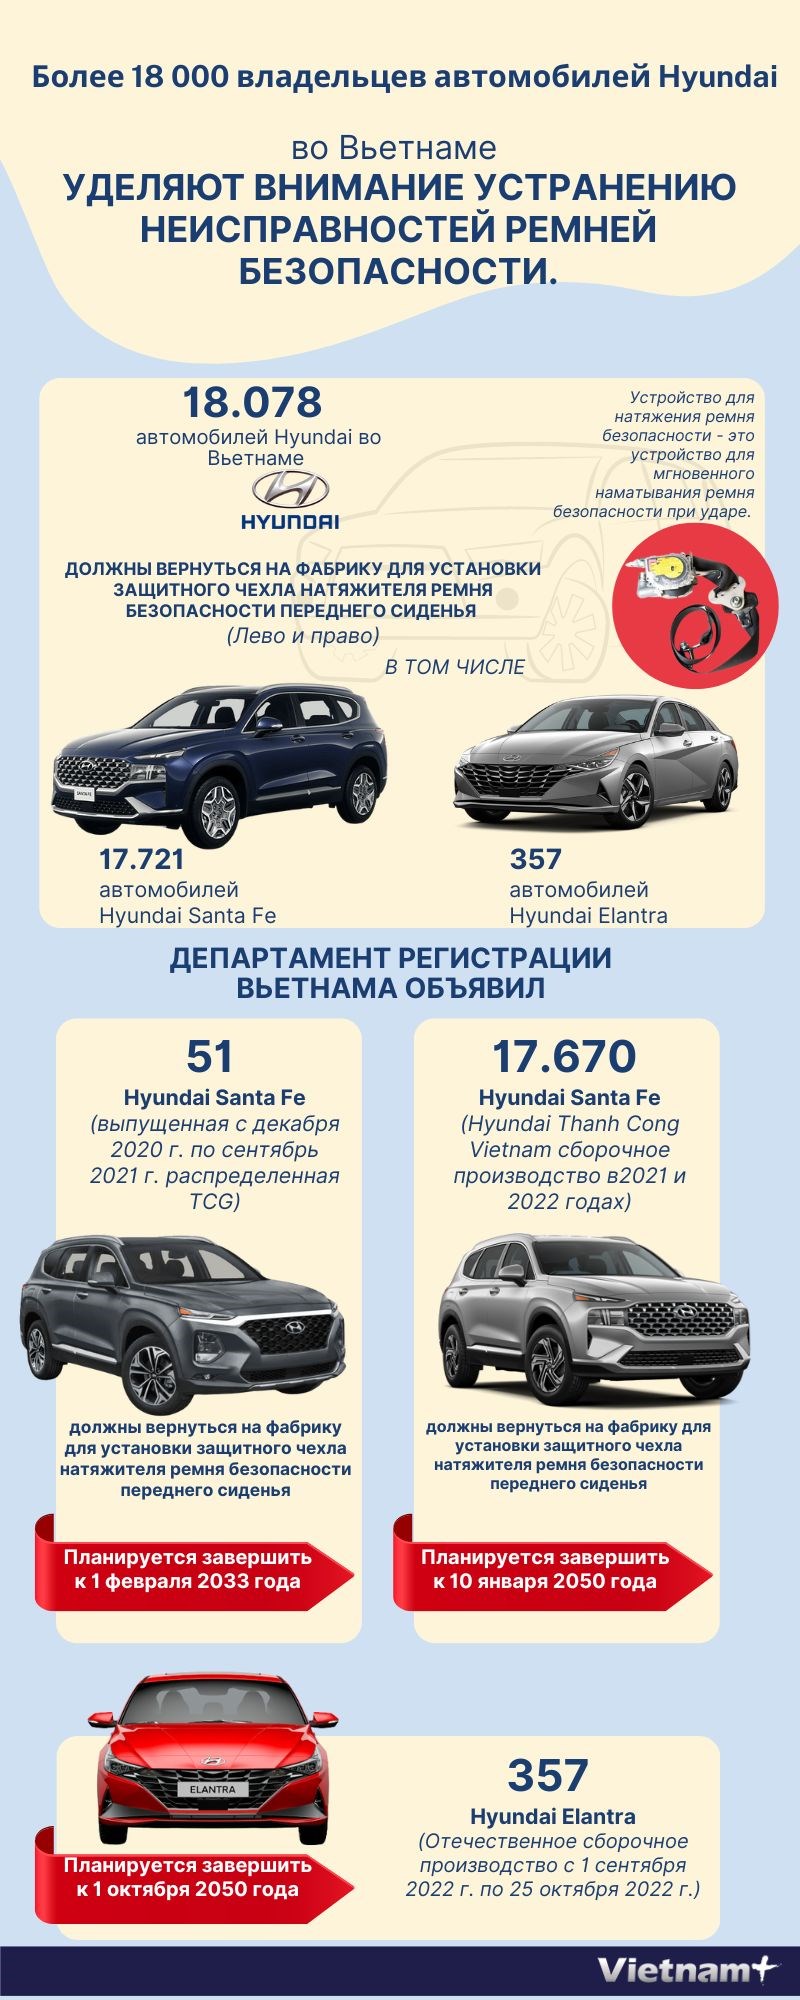 Более 18 000 владельцев автомобилеи Hyundai во Вьетнаме уделяют внимание устранению неисправностеи ремнеи безопасности. hinh anh 1